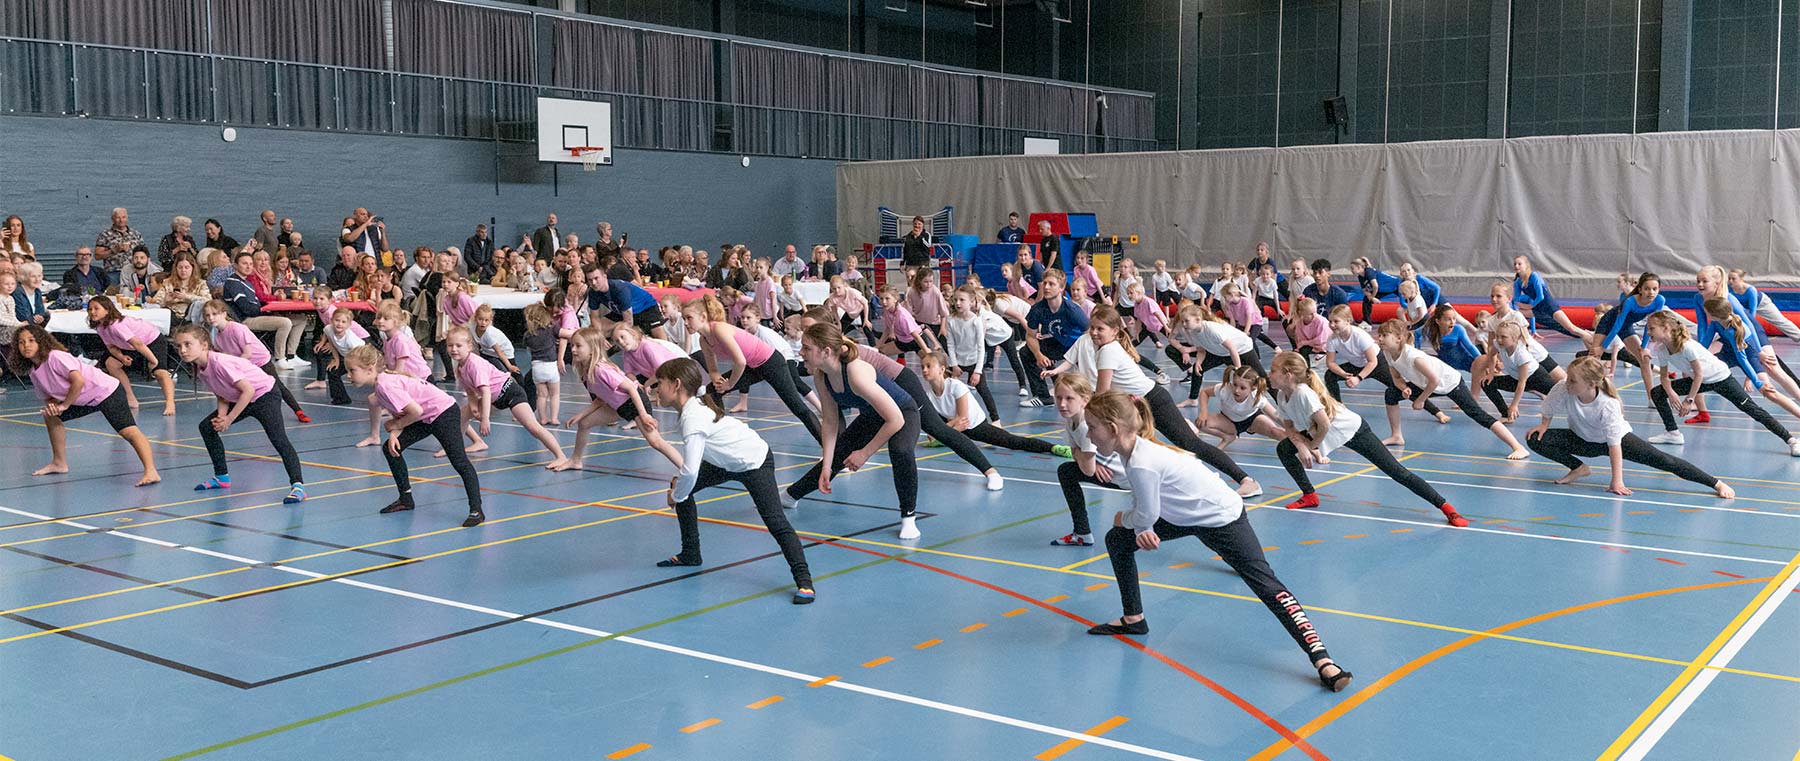 Lørdag den 29. april afholdt Amagerland Gymnastikforening deres forårsopvisning i Hollænderhallen. Foto: TorbenStender.